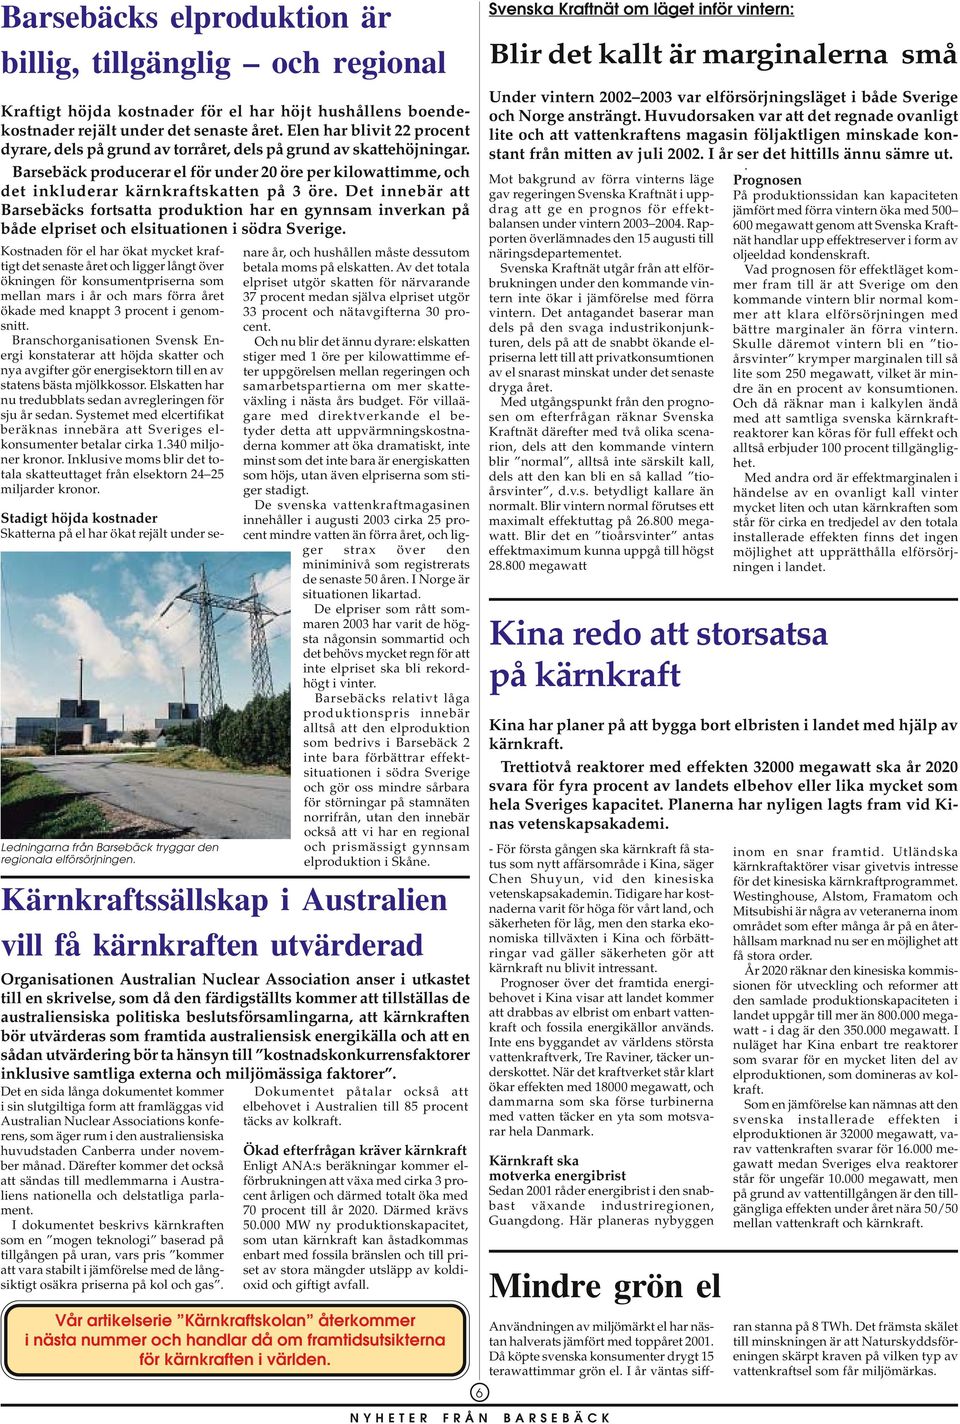 Det innebär att Barsebäcks fortsatta produktion har en gynnsam inverkan på både elpriset och elsituationen i södra Sverige.